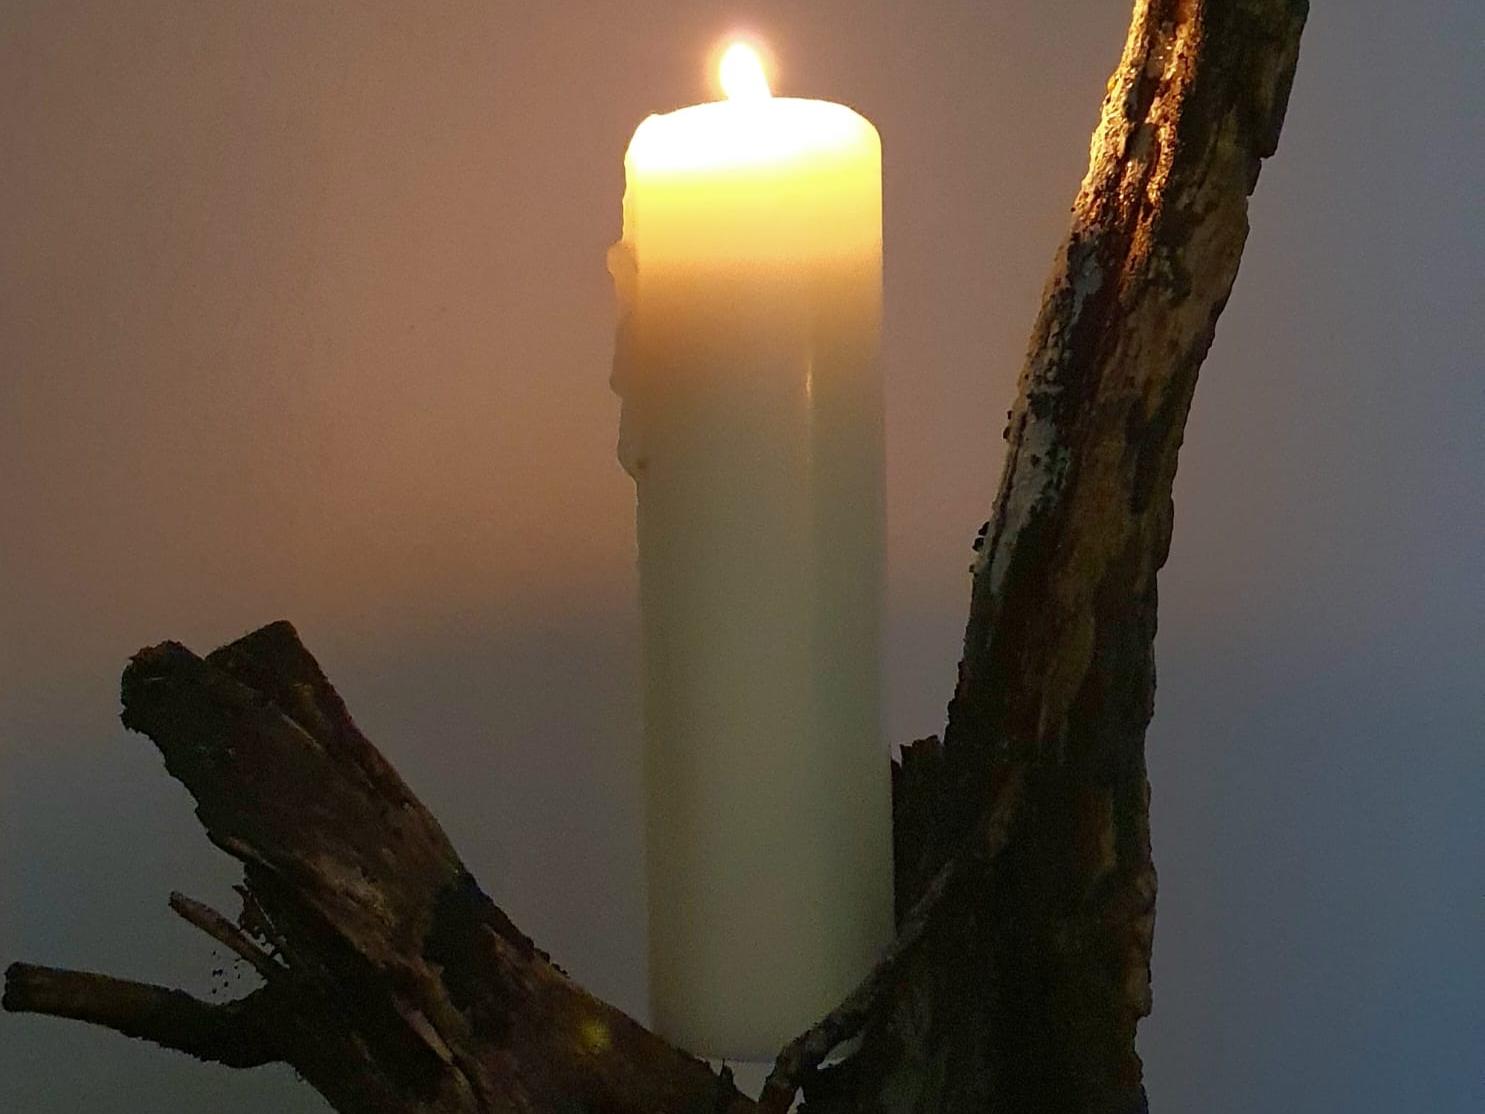 03. Dezember – Die erste Kerze brennt für die Wachsamkeit: 